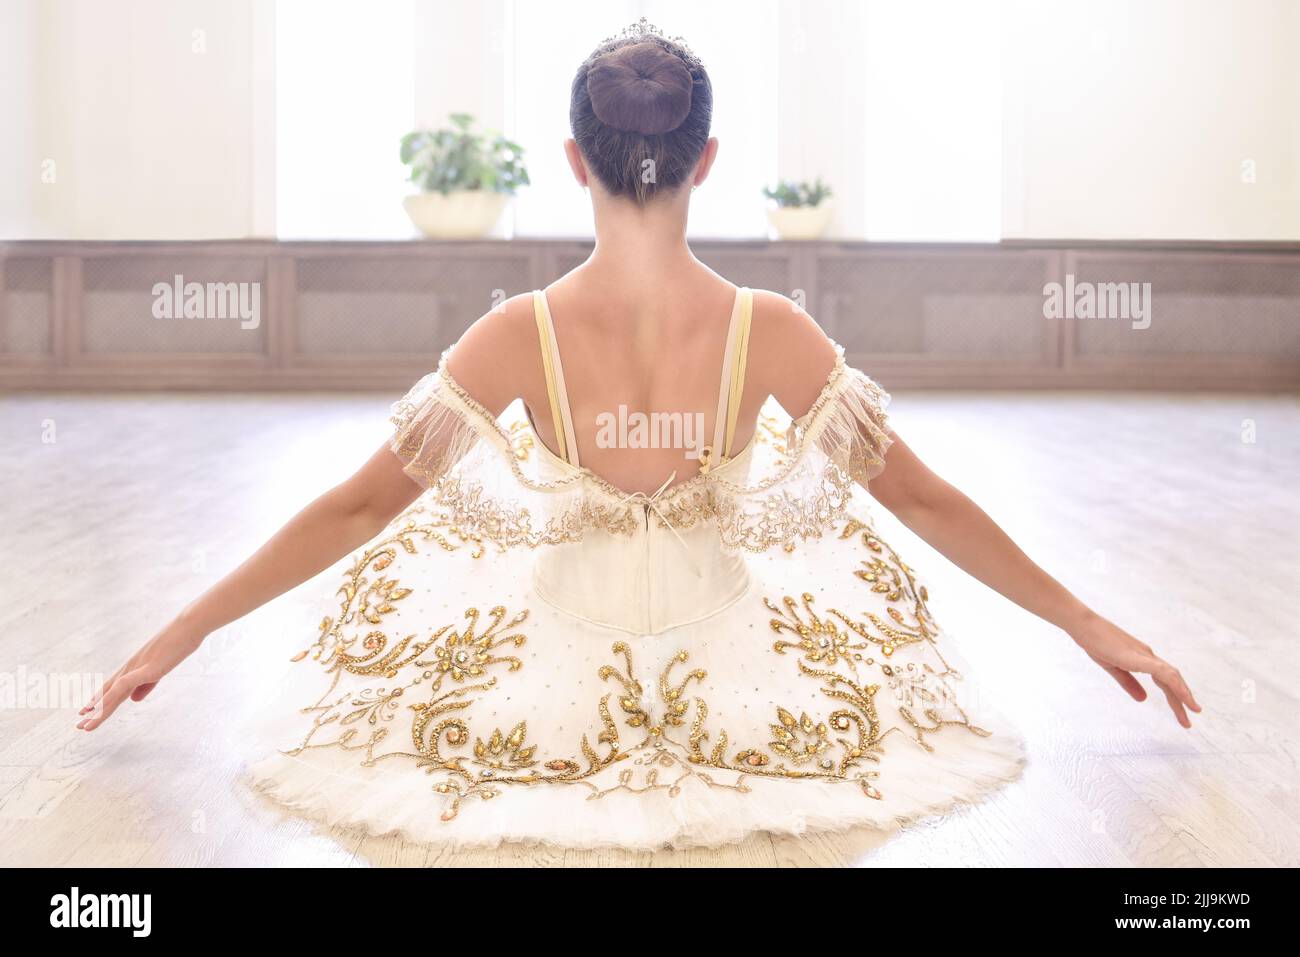 Vue arrière de la magnifique jeune danseuse de ballet en robe crème assise et se réchauffe les mains sur un plancher de bois dans le studio de ballet Banque D'Images